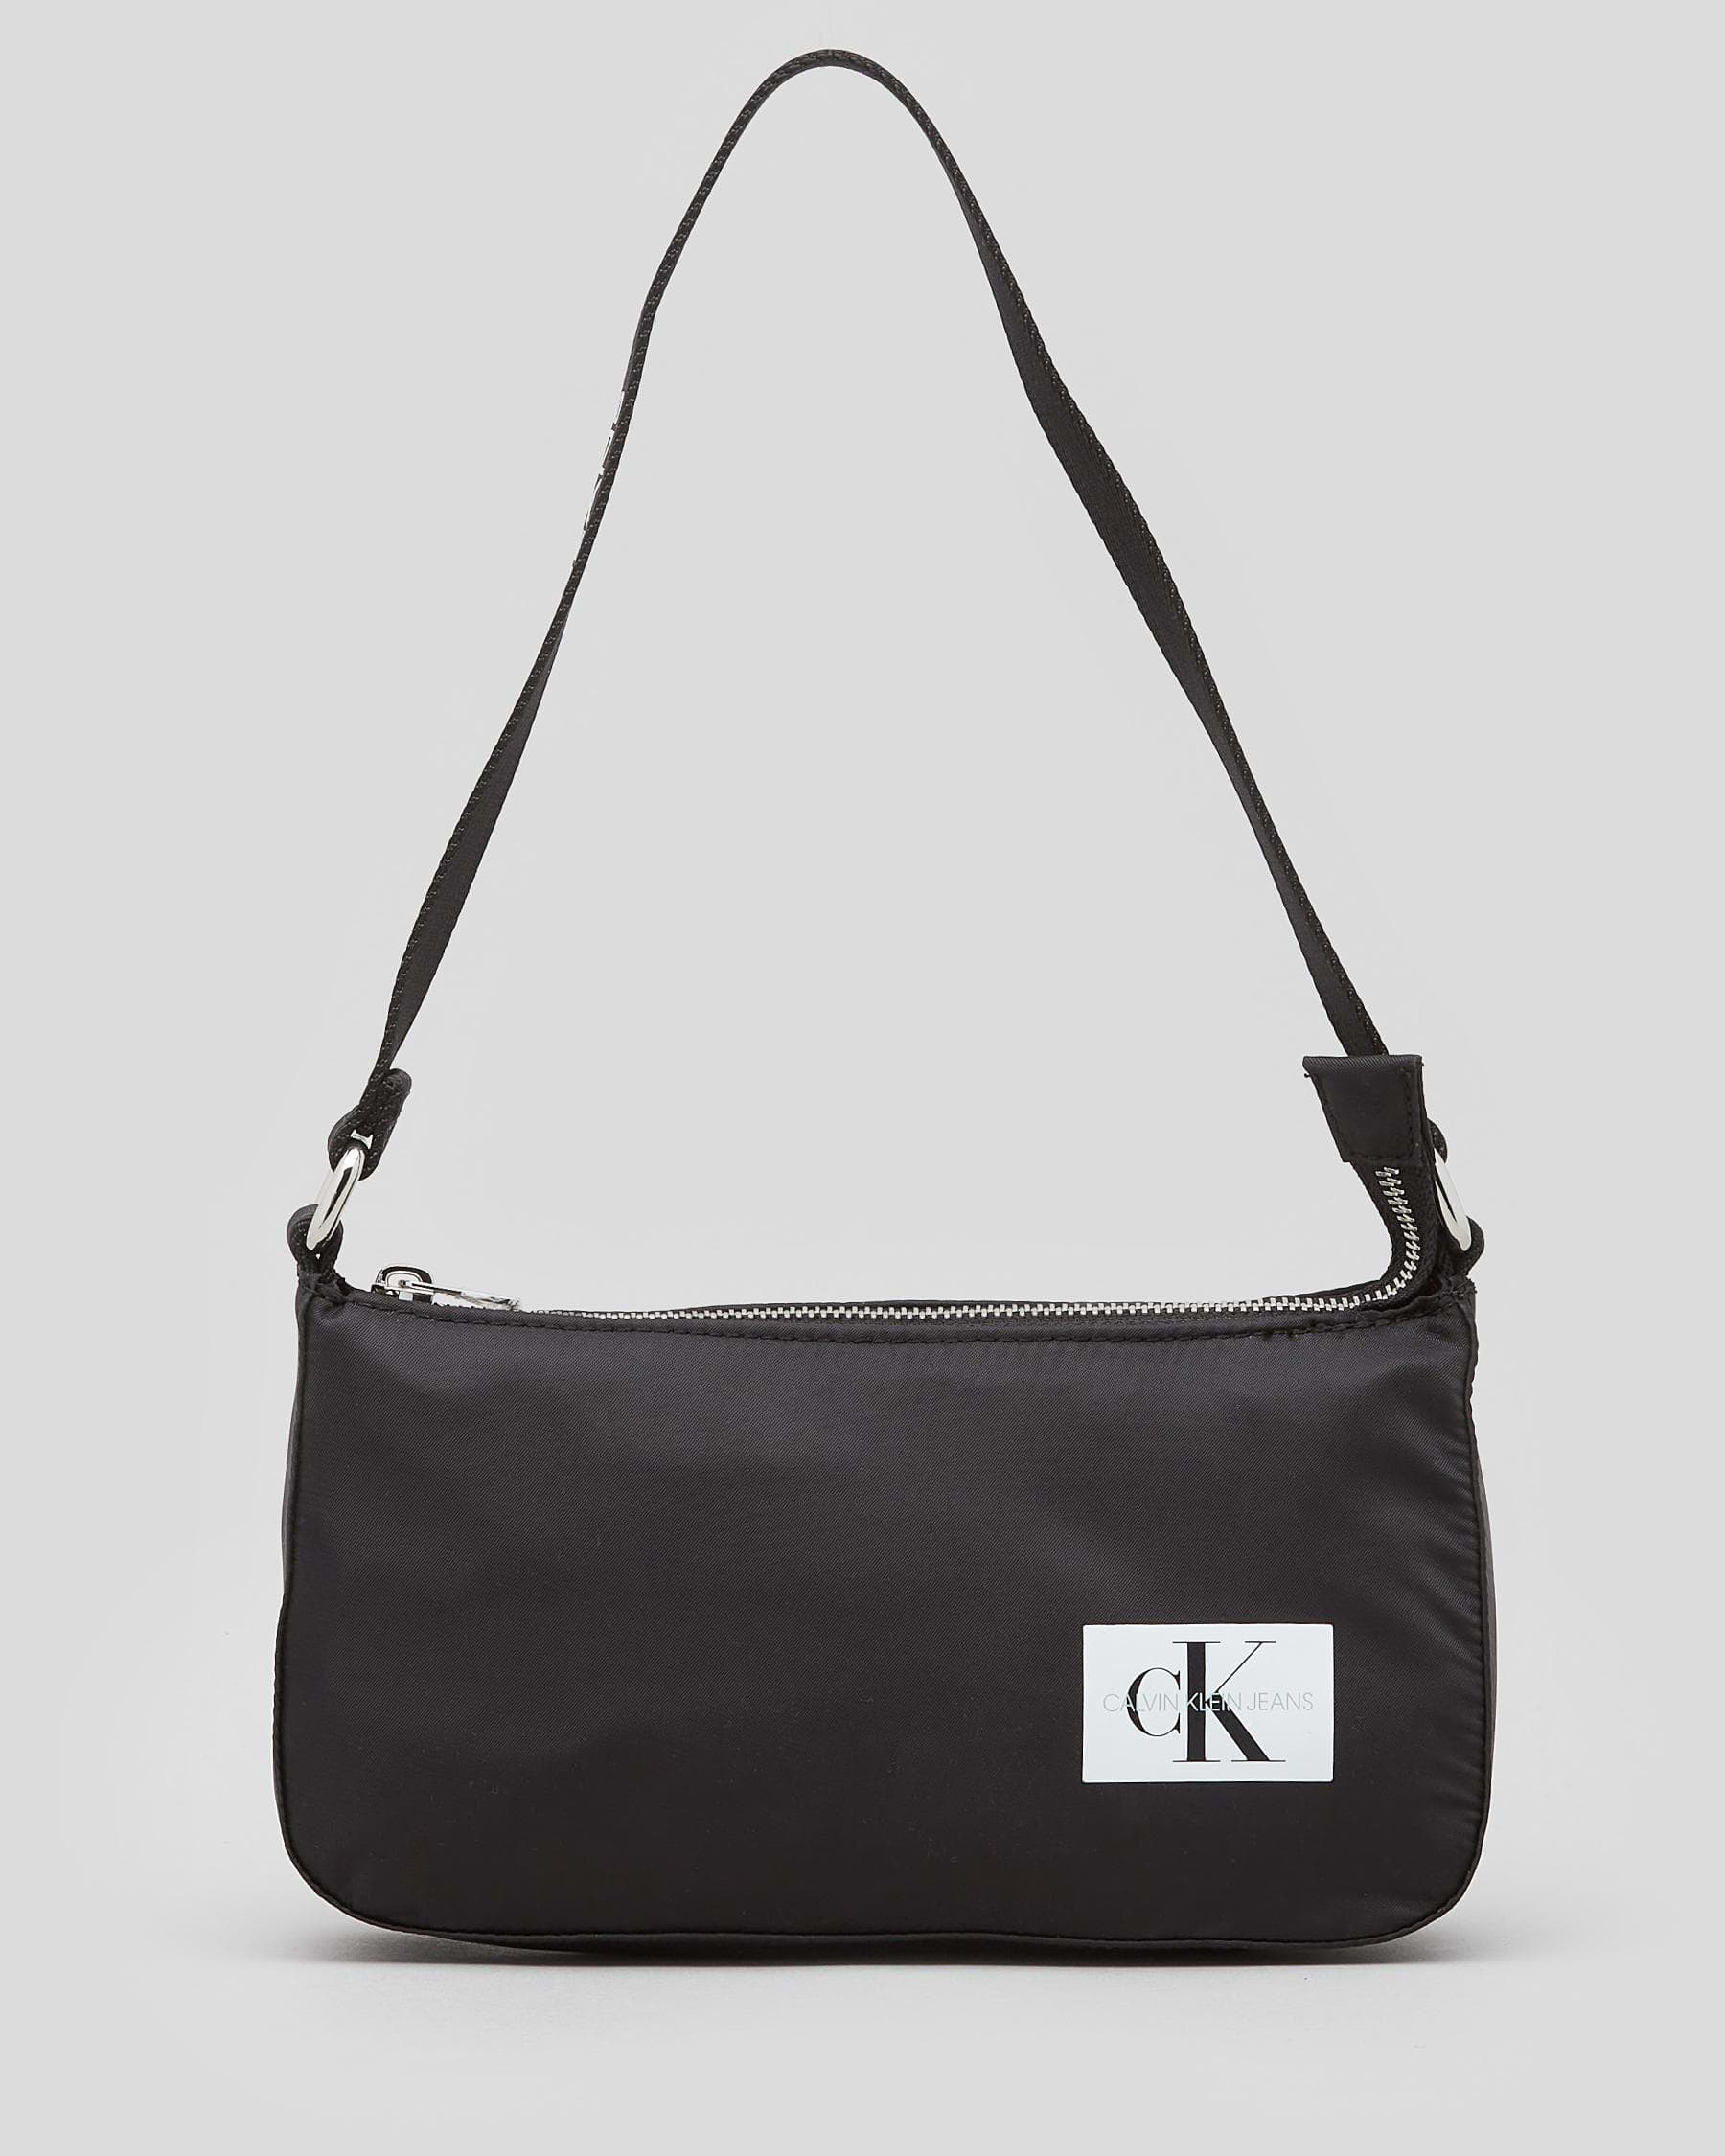 Calvin Klein Logo Crossbody Bags